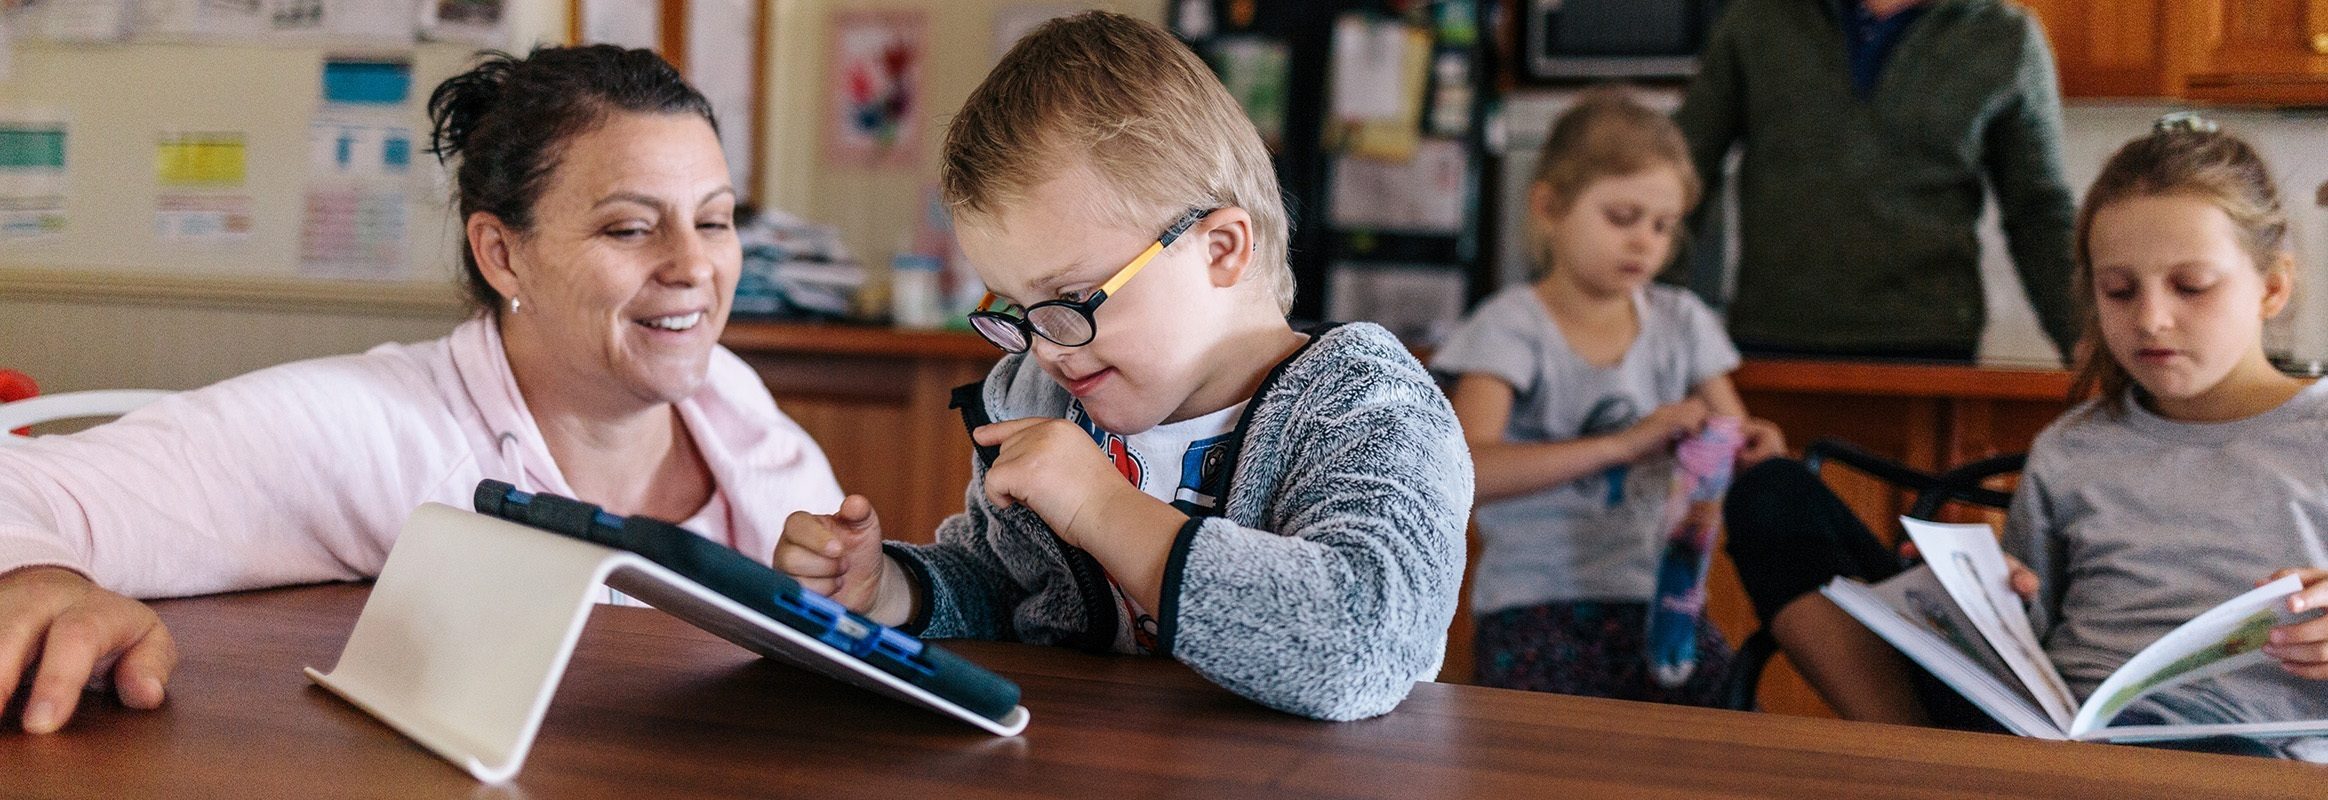 Boy with iPad in classroom